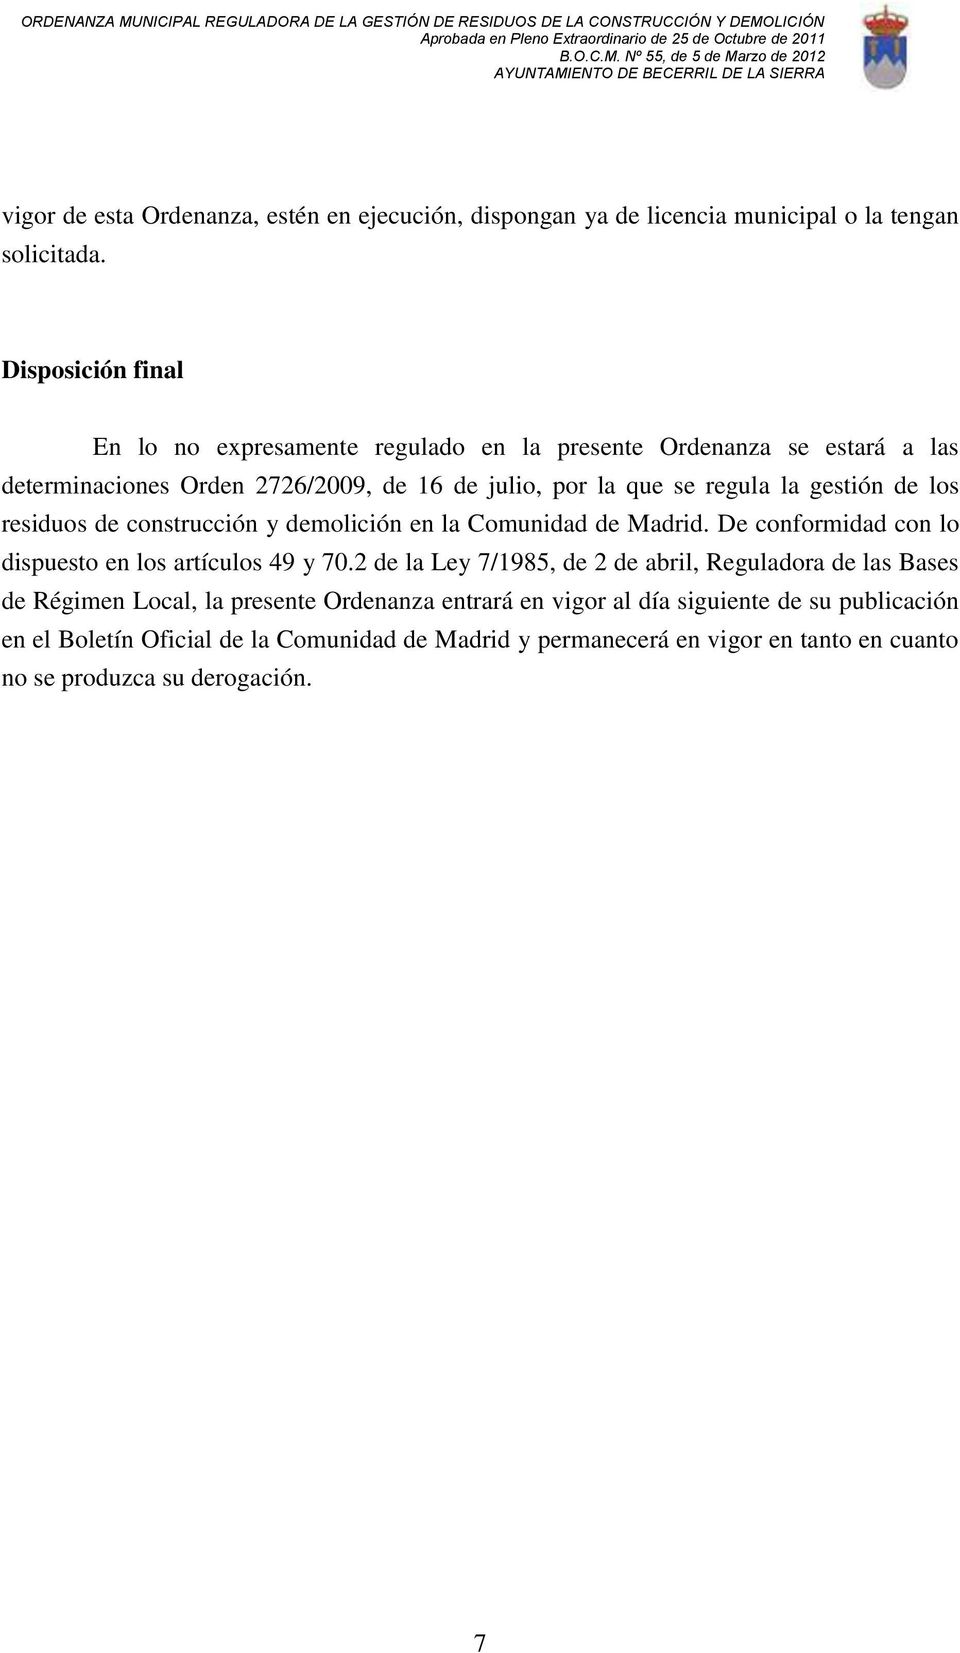 gestión de los residuos de construcción y demolición en la Comunidad de Madrid. De conformidad con lo dispuesto en los artículos 49 y 70.